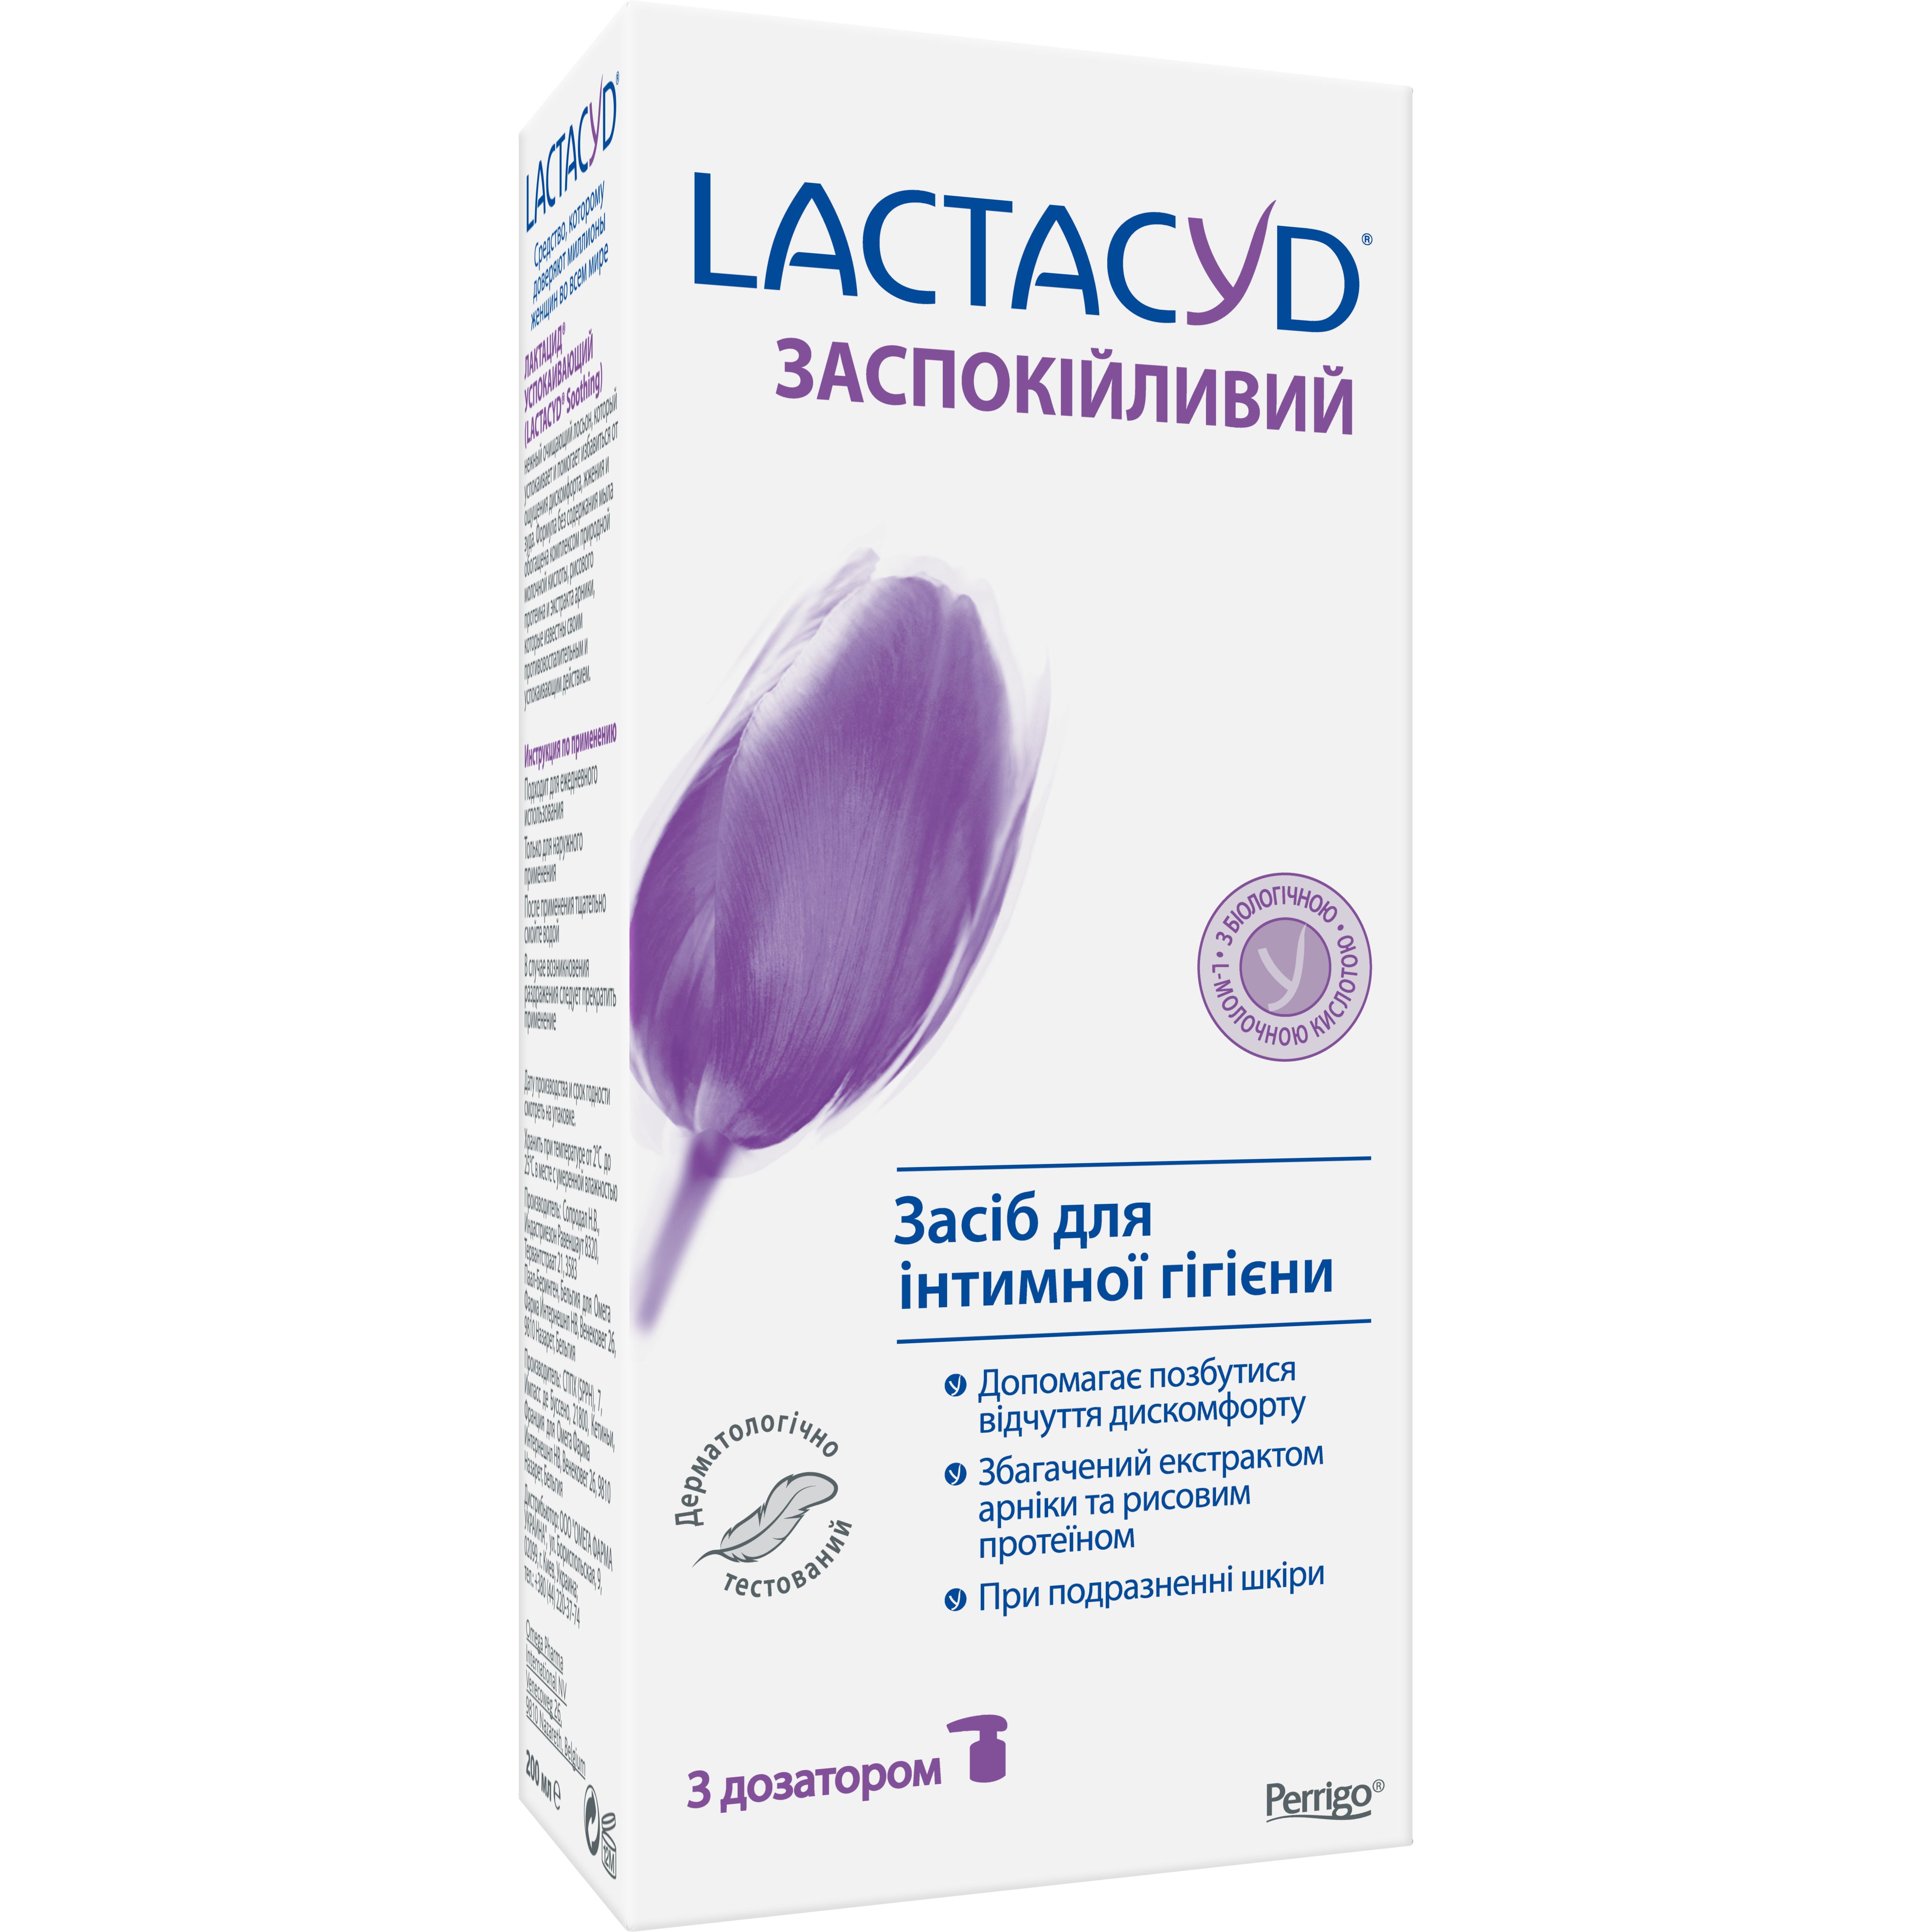 Средство для интимной гигиены Lactacyd Успокаивающий, с дозатором, 200 мл - фото 2